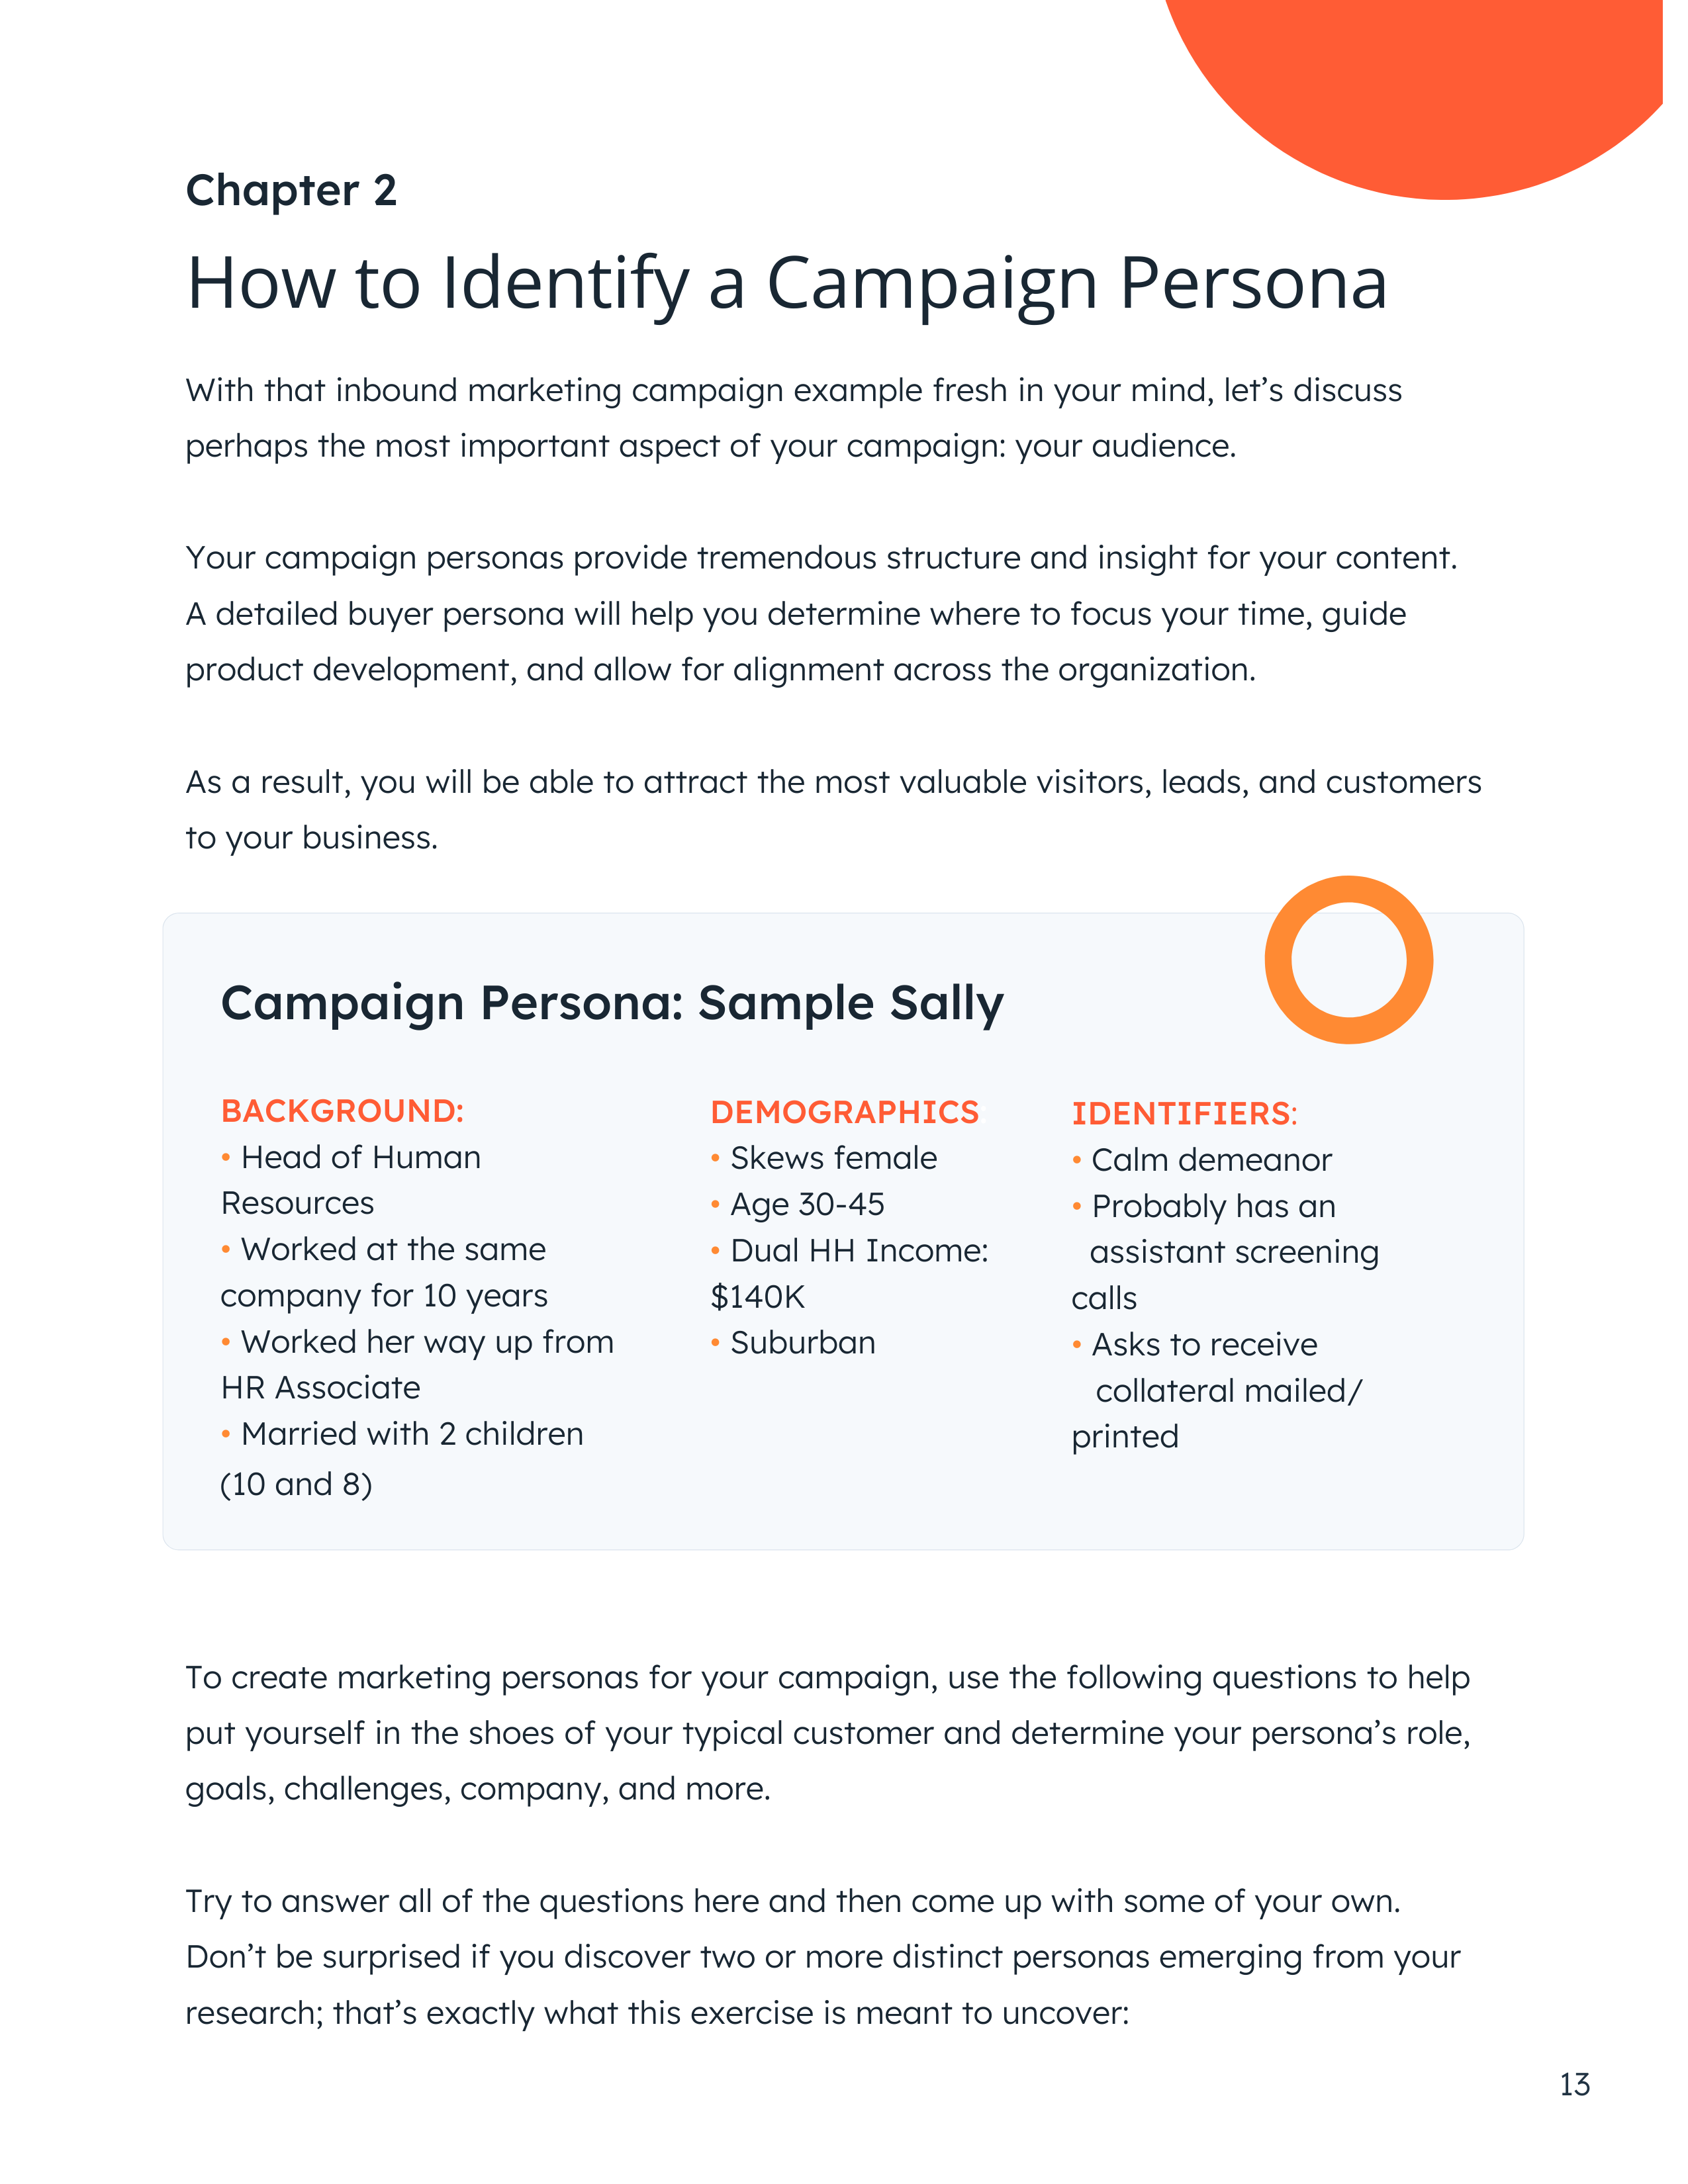 identify-campaign-persona-content